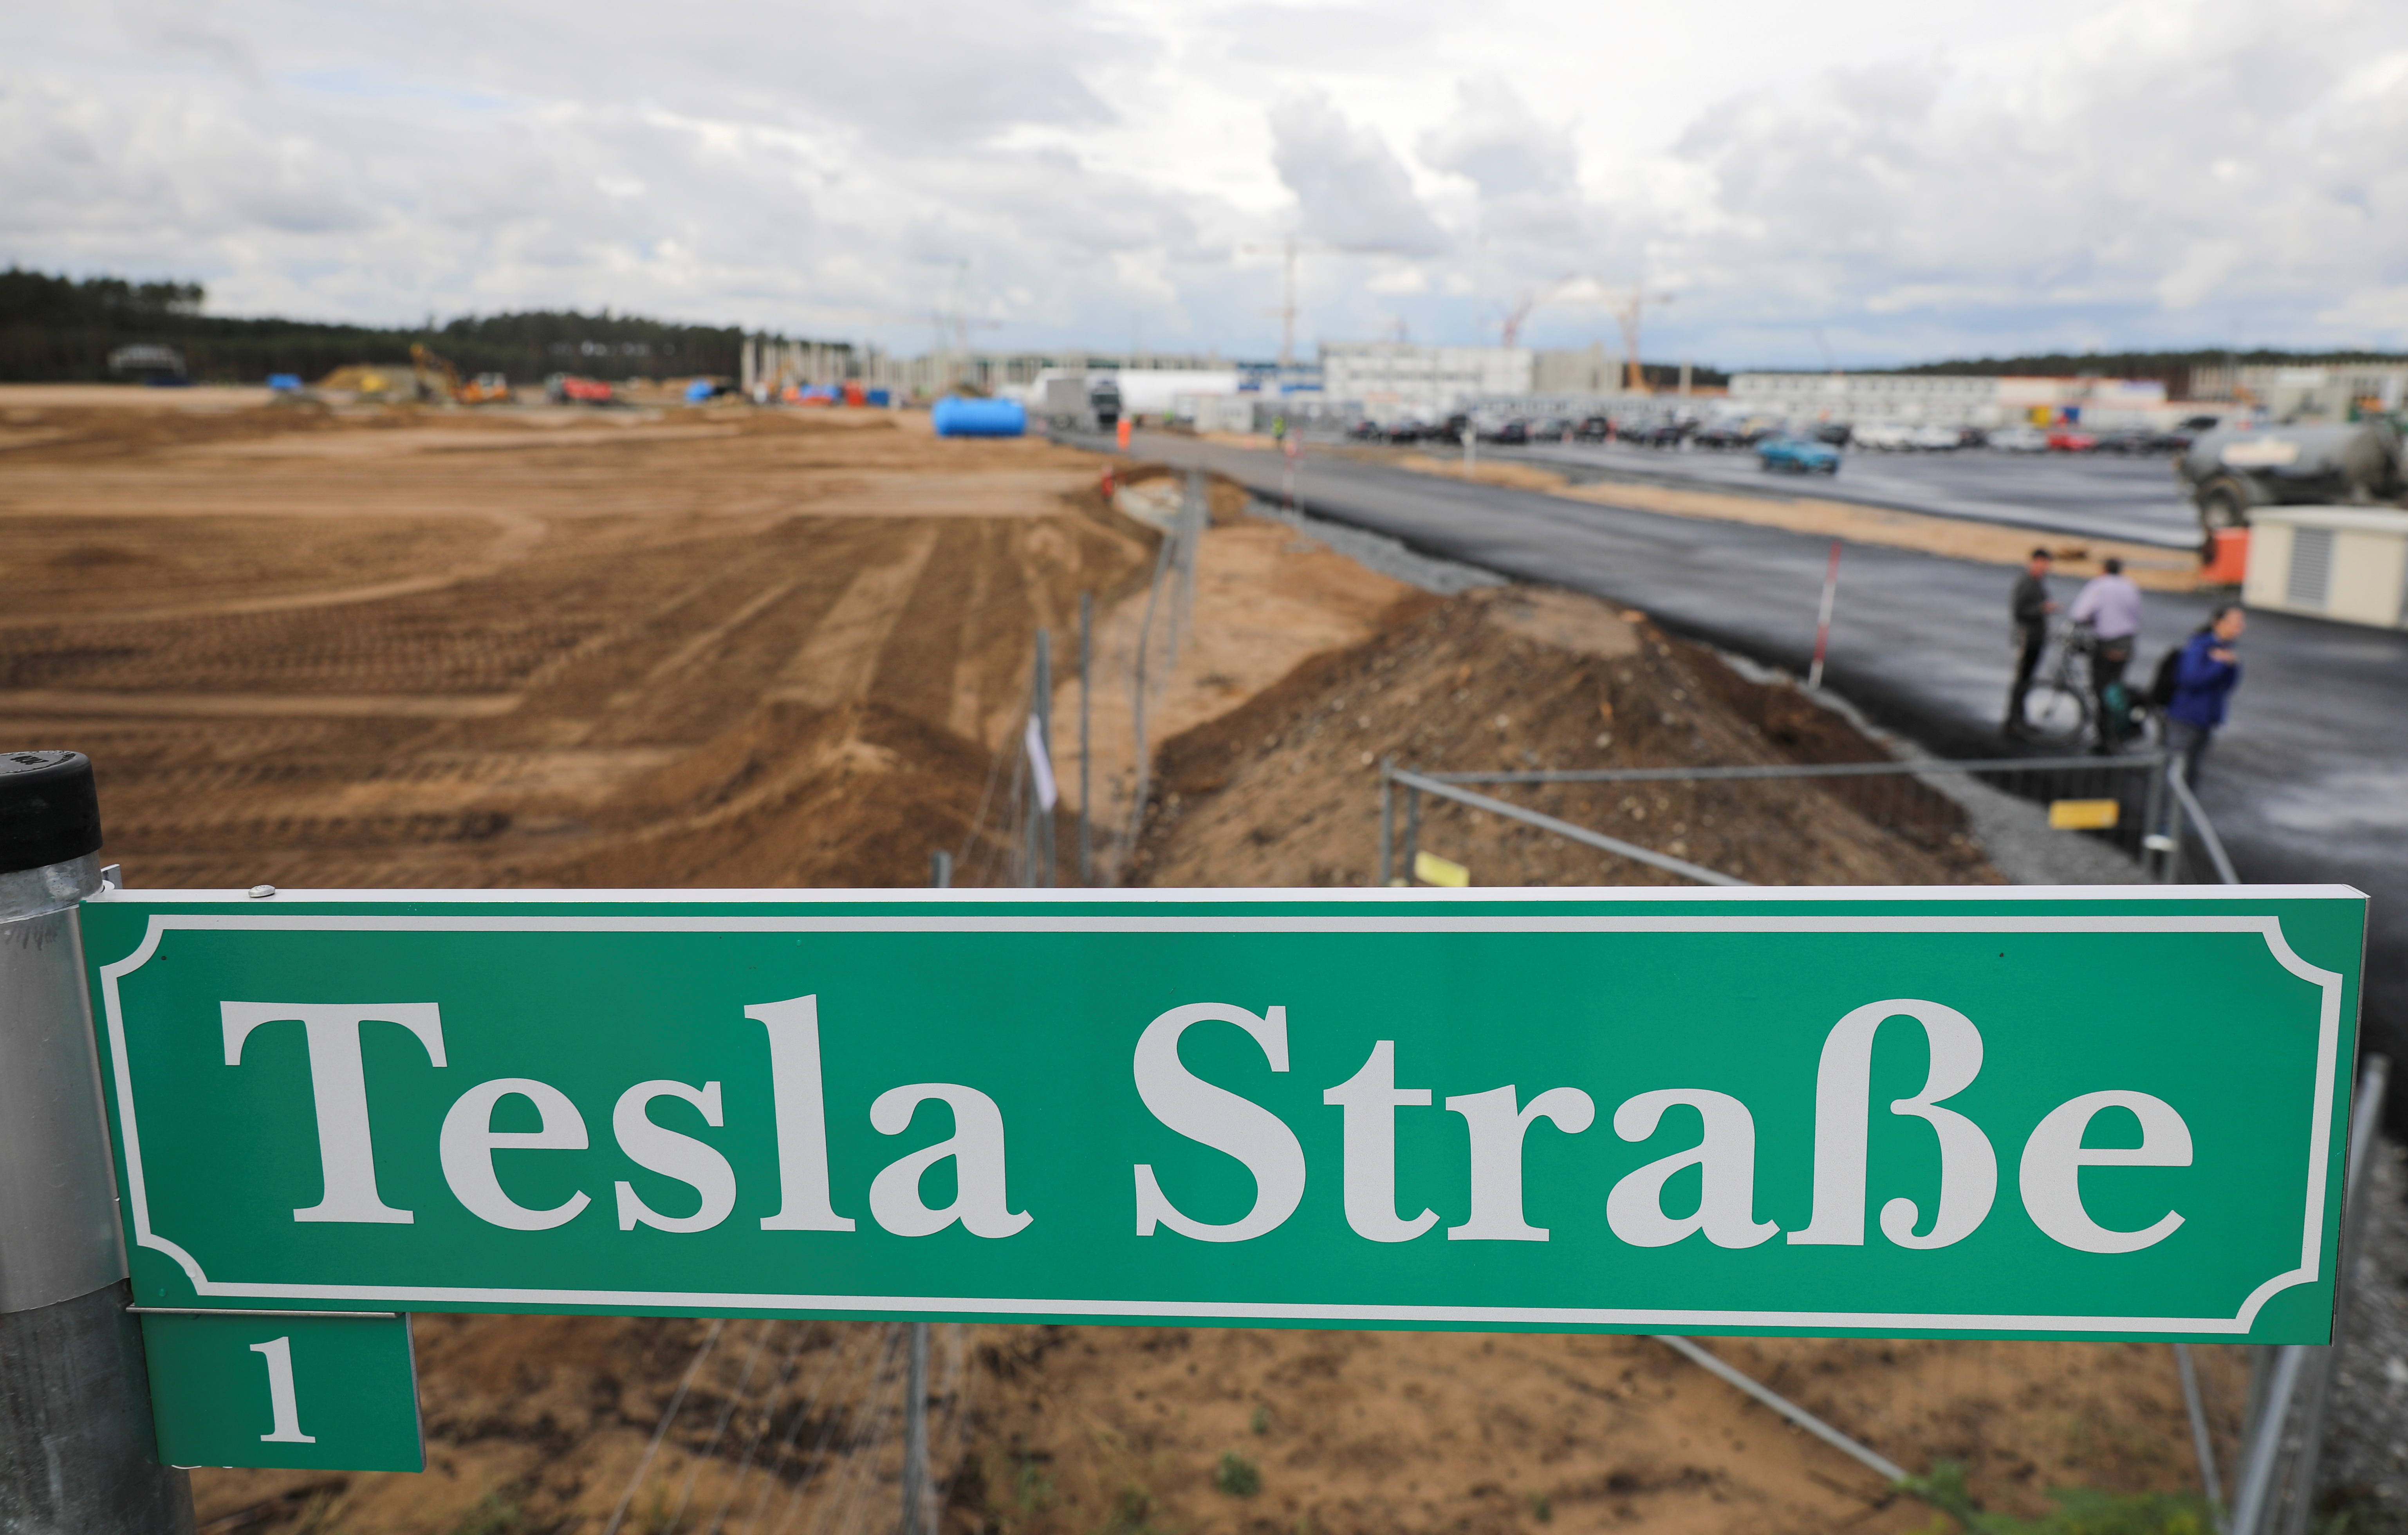 Una imagen de la etapa inicial de la construcción de la megafábrica de Tesla en Gruenheide, cerca de Berlín  
REUTERS/Hannibal Hanschke/File Photo